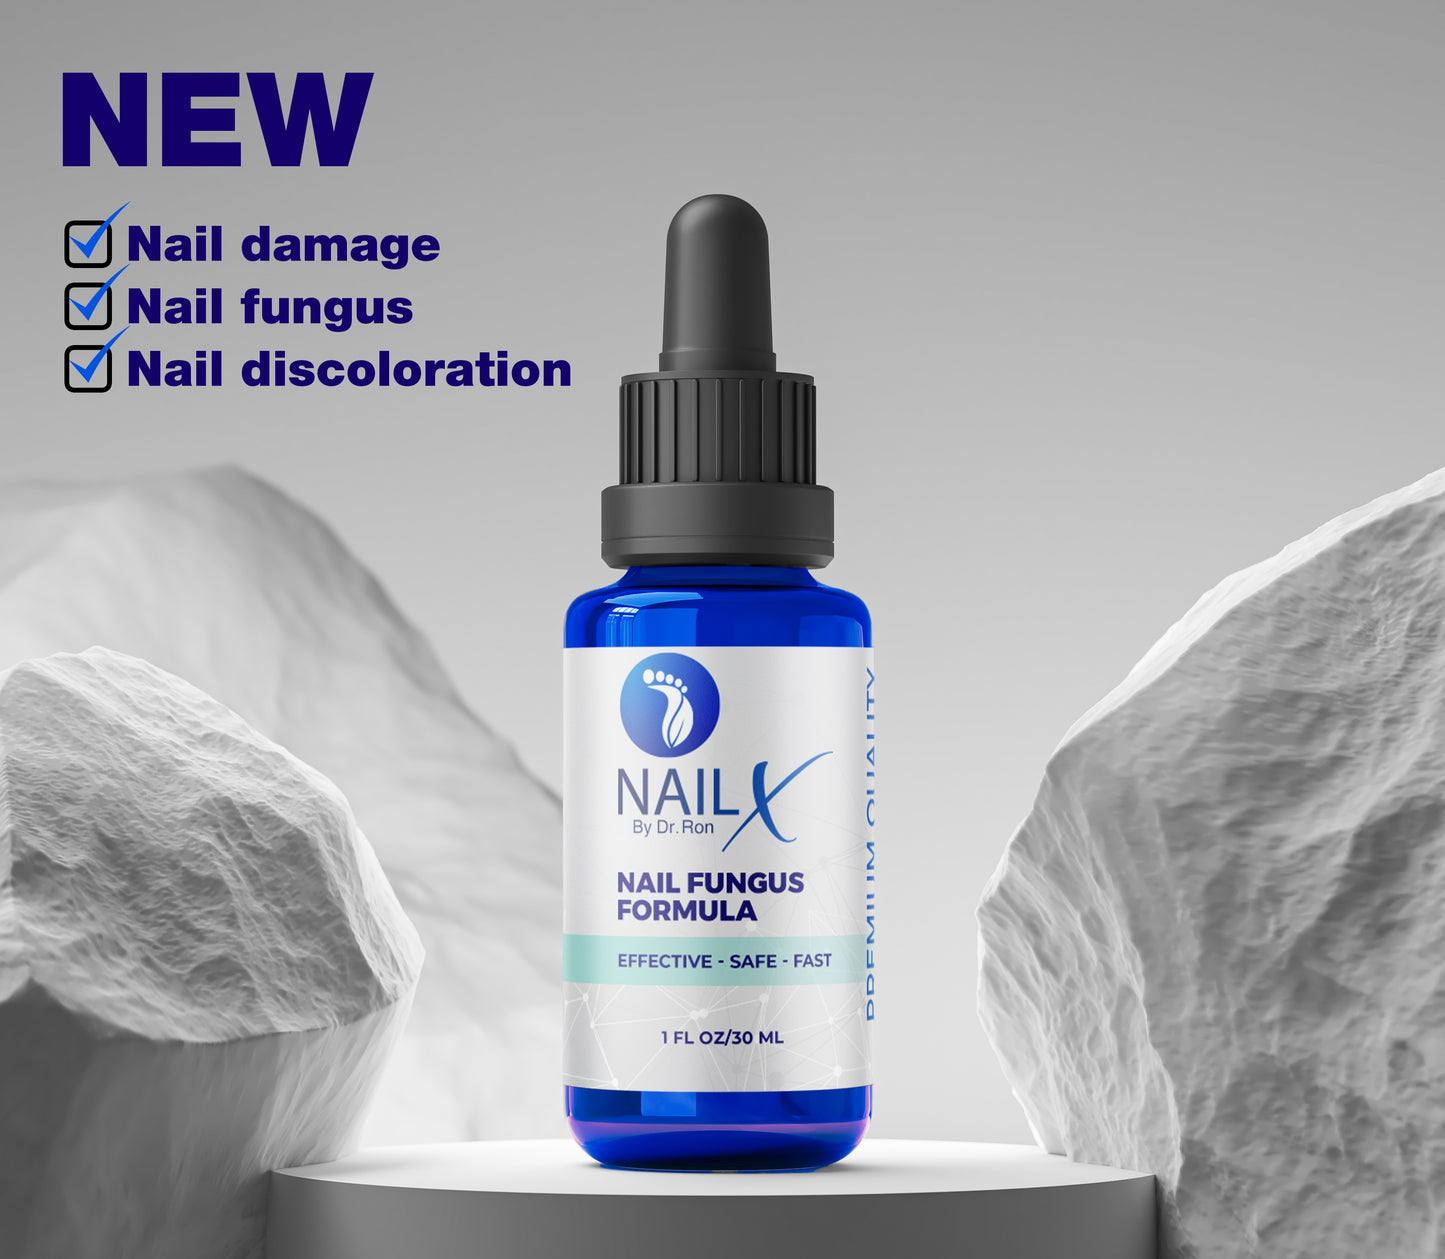 NailX by Dr Ron Nail Fungus Formula